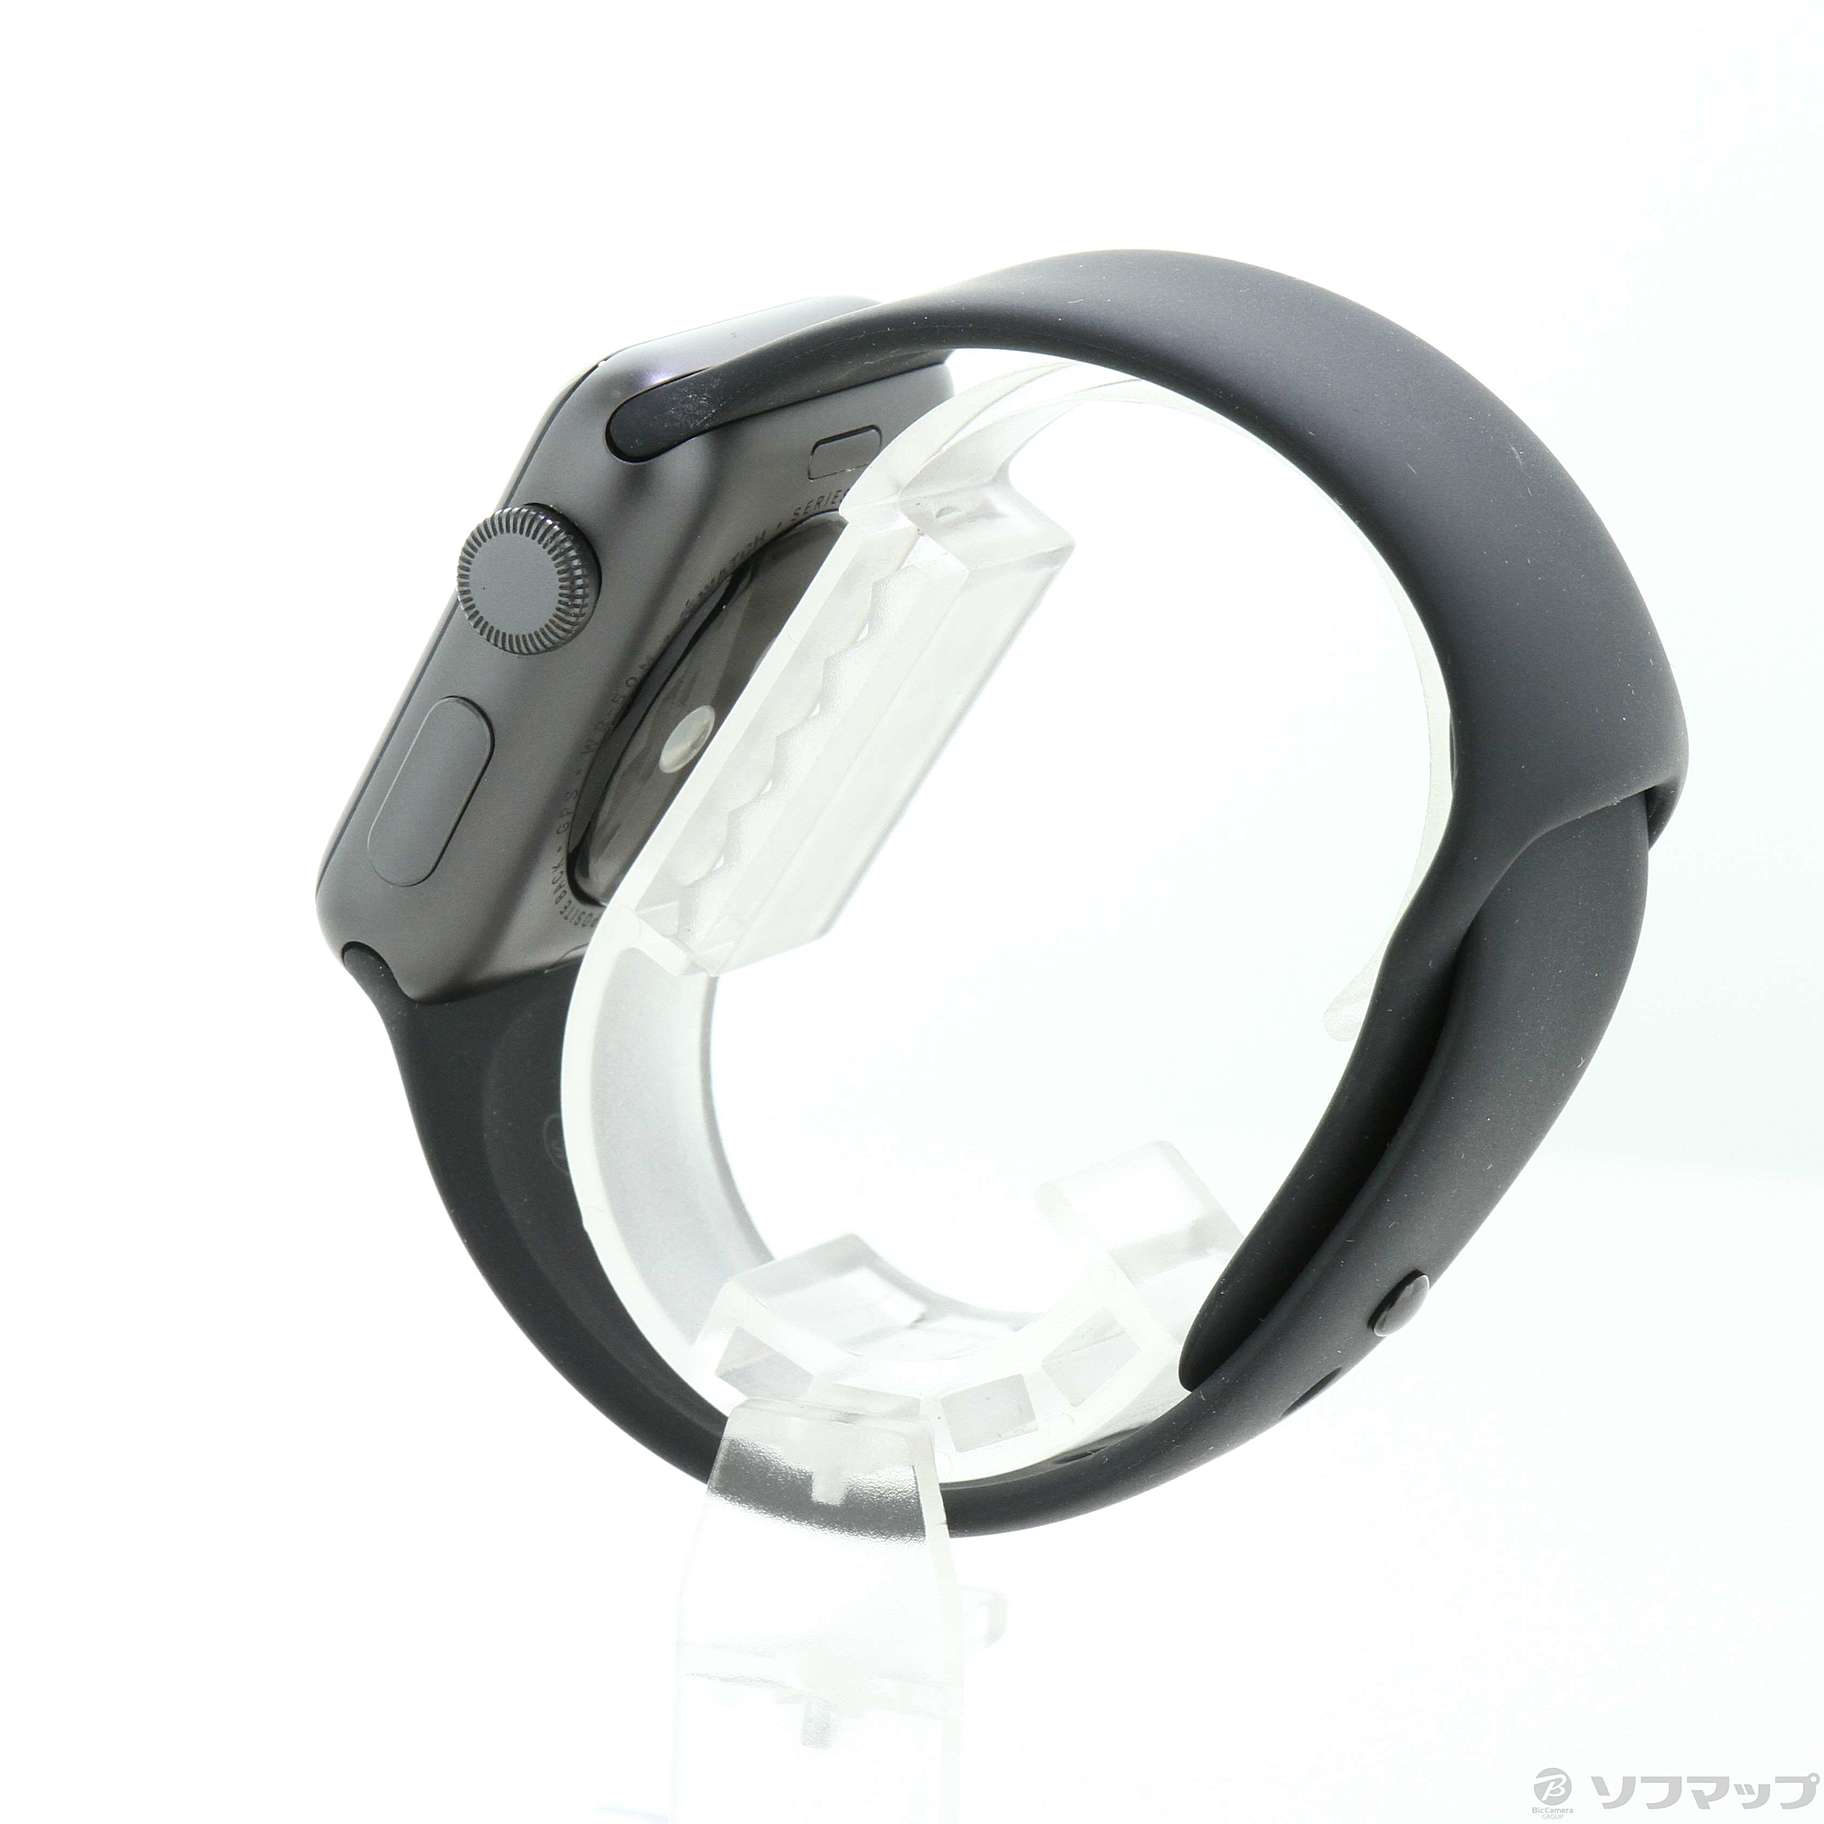 中古品〕 Apple Watch Series 3 GPS 38mm スペースグレイアルミニウム ...